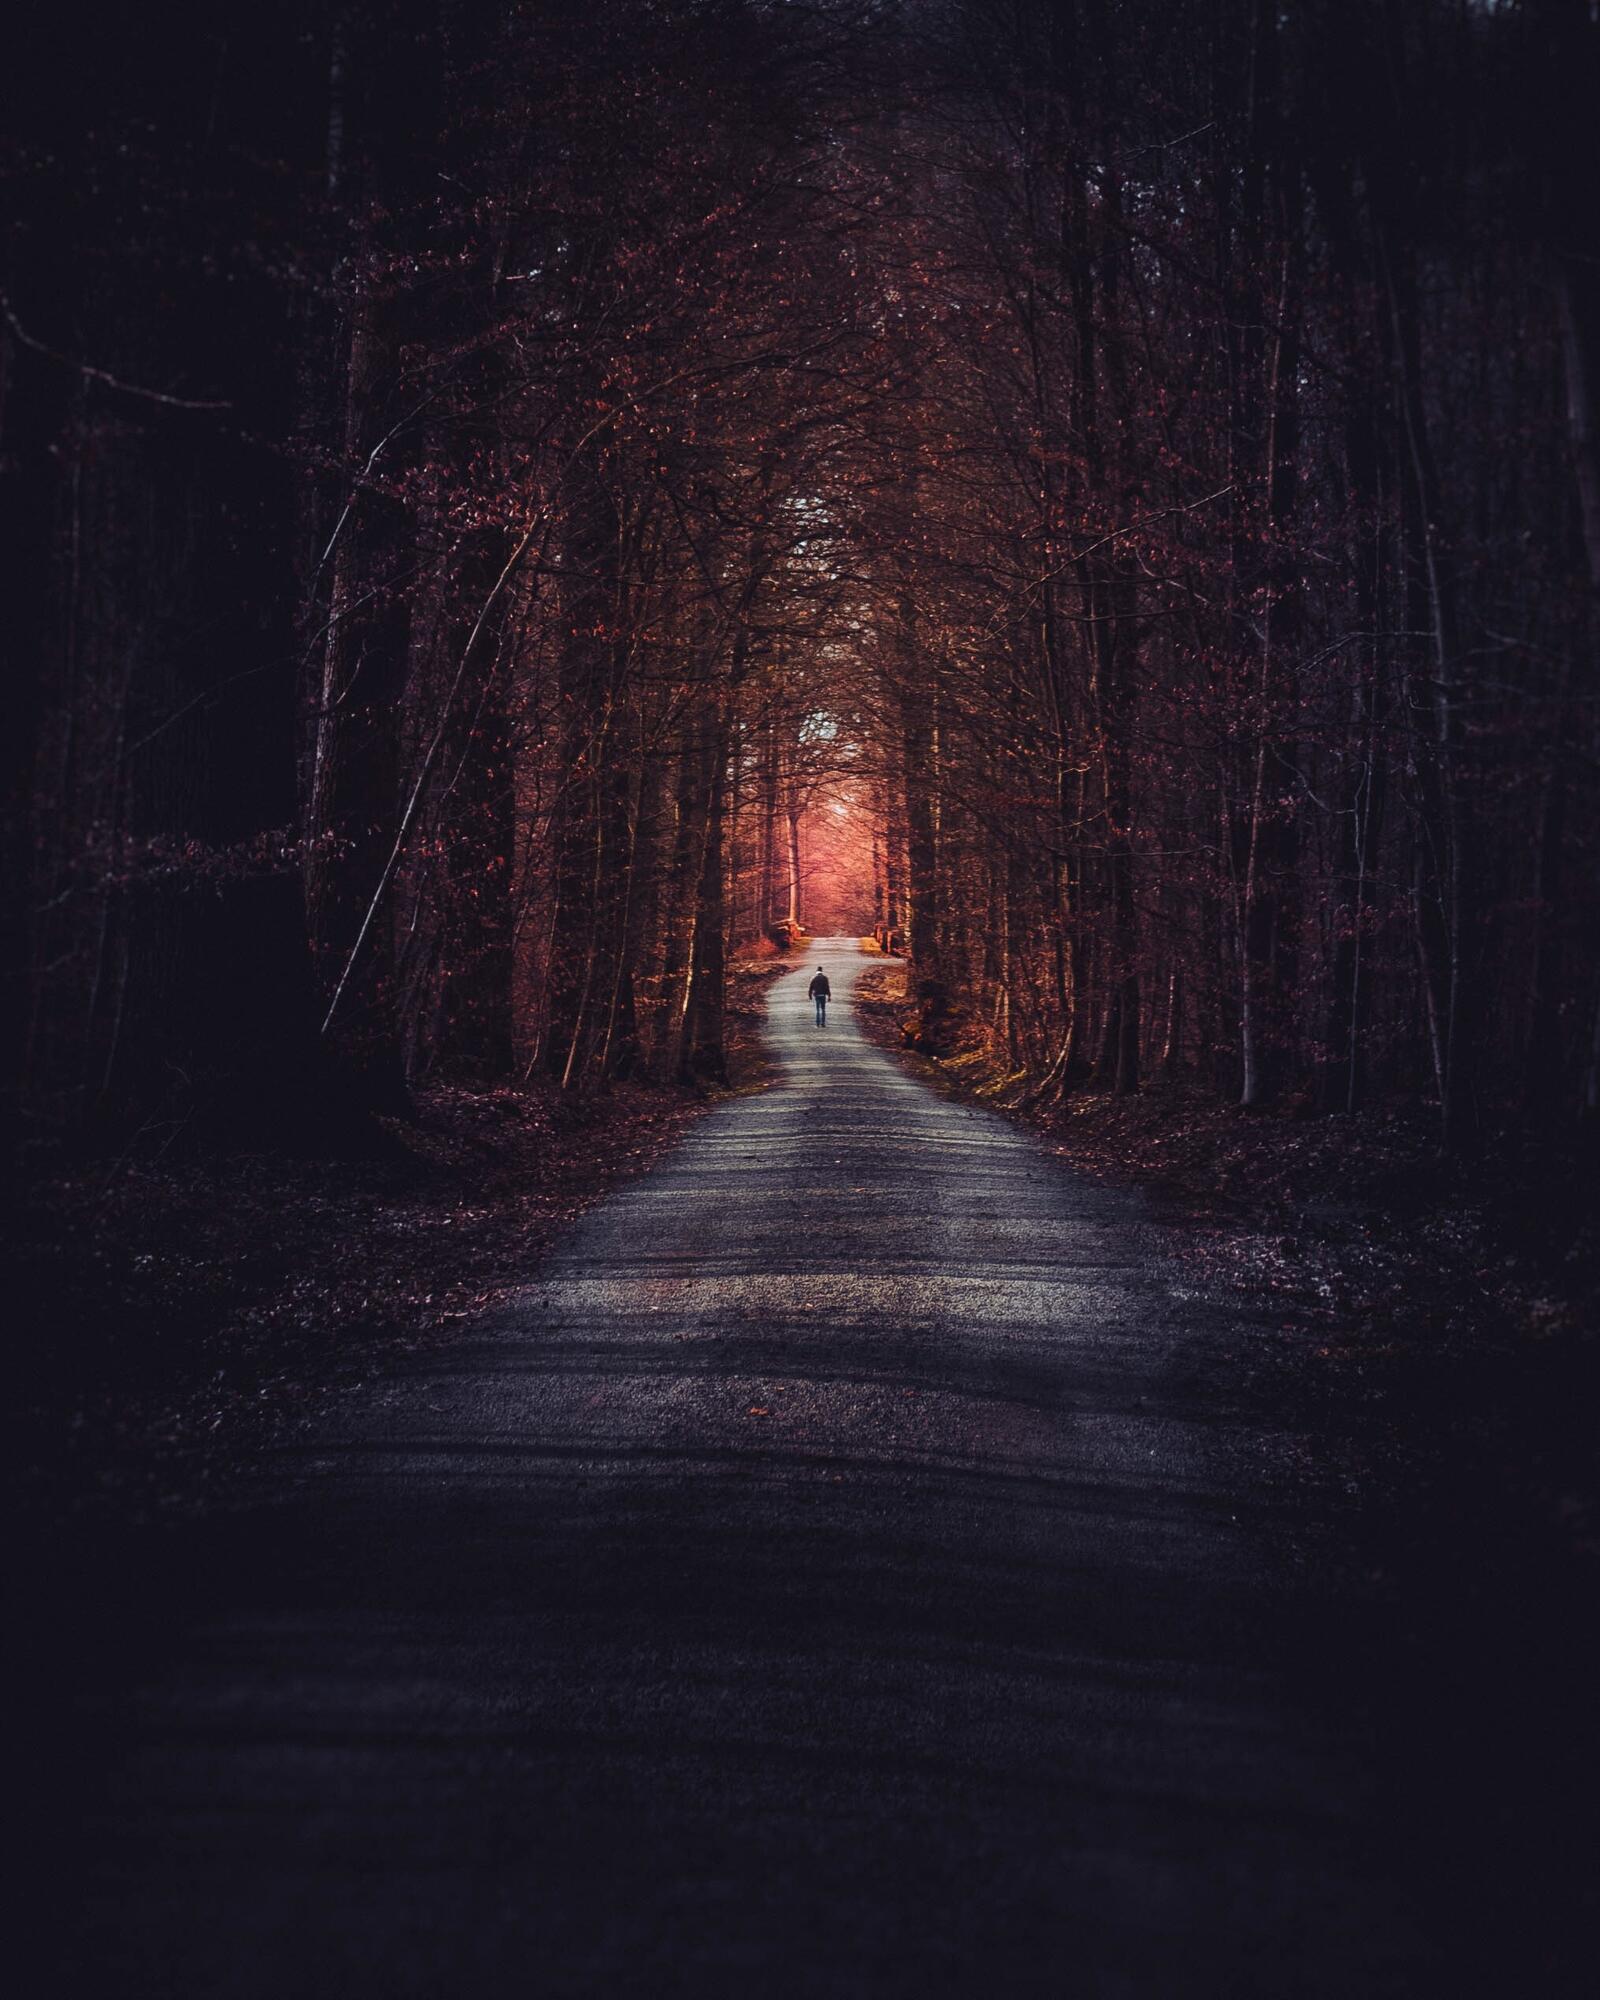 Free photo A man walks along a road through a dark autumn forest